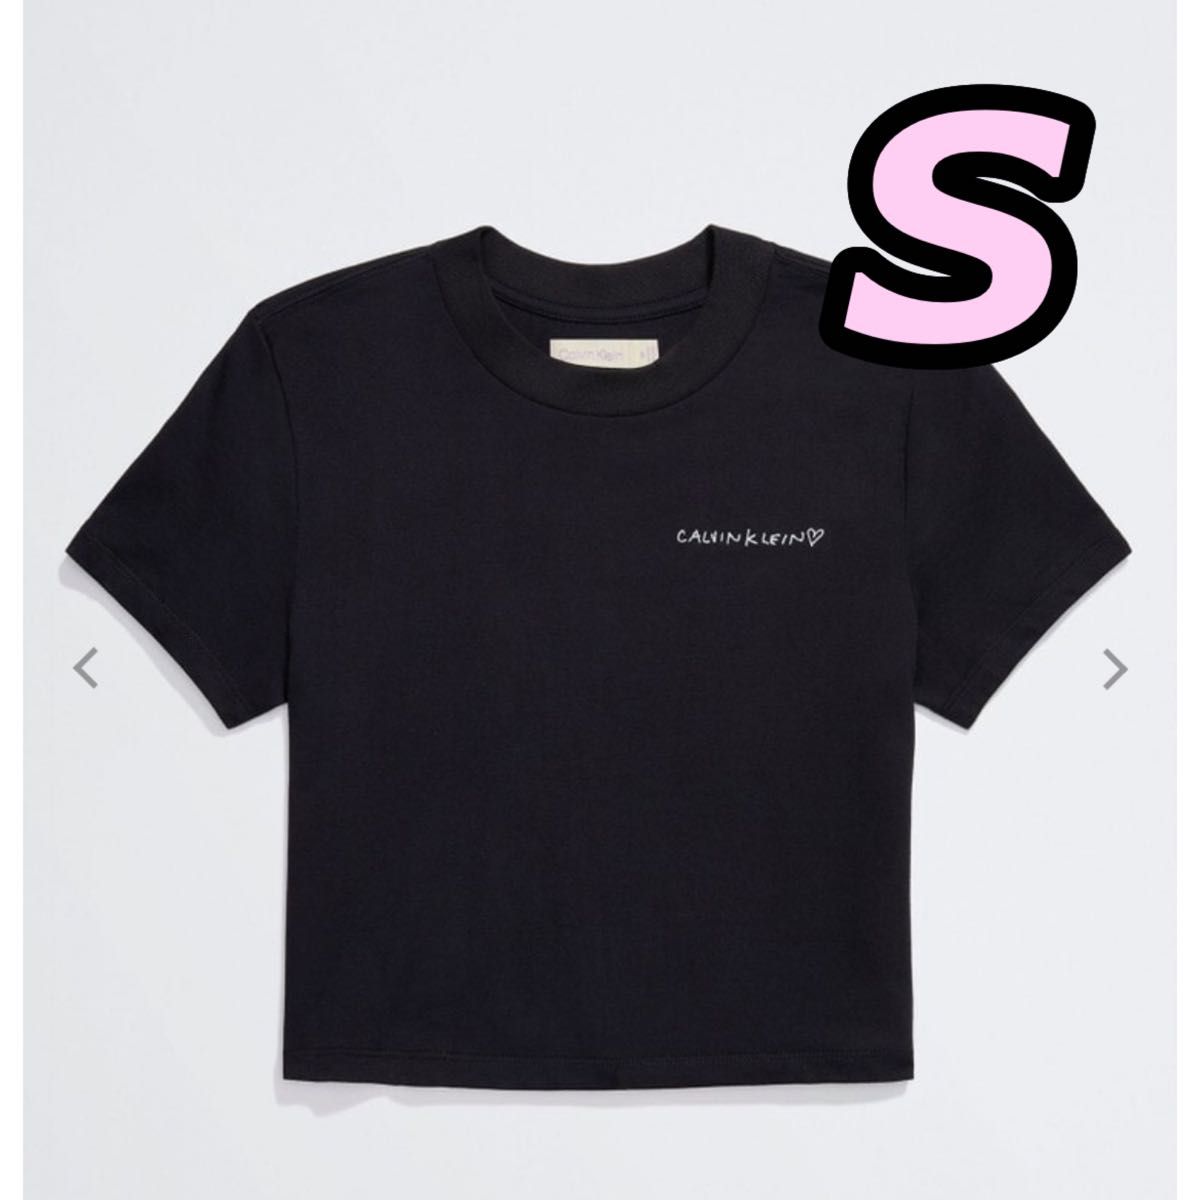 Jennie for Calvin Klein Tシャツ 黒 S ブラック